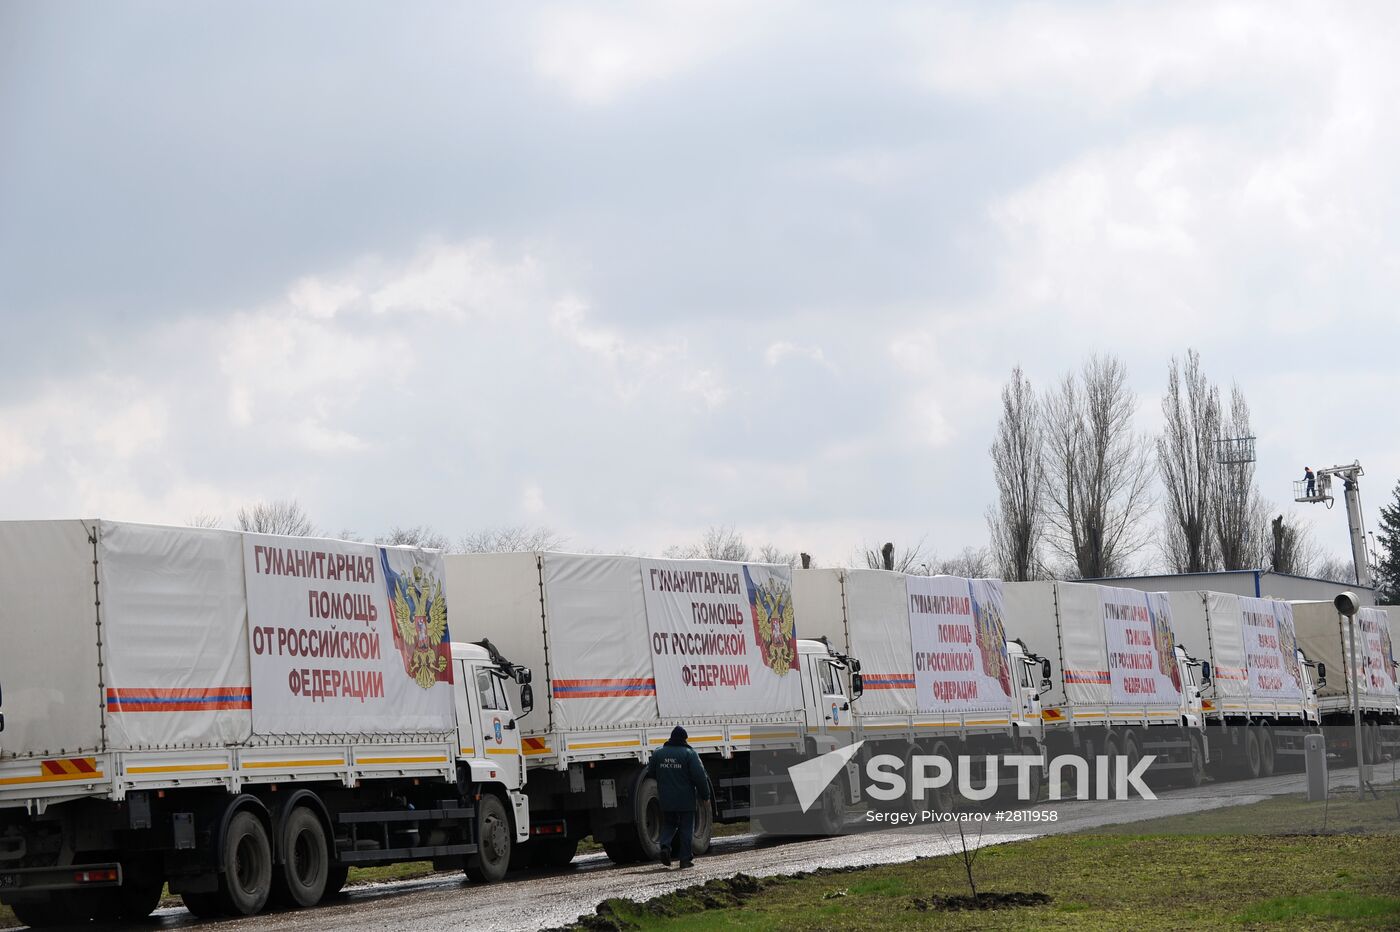 Preparing 50th humanitarian aid convoy to Donbass